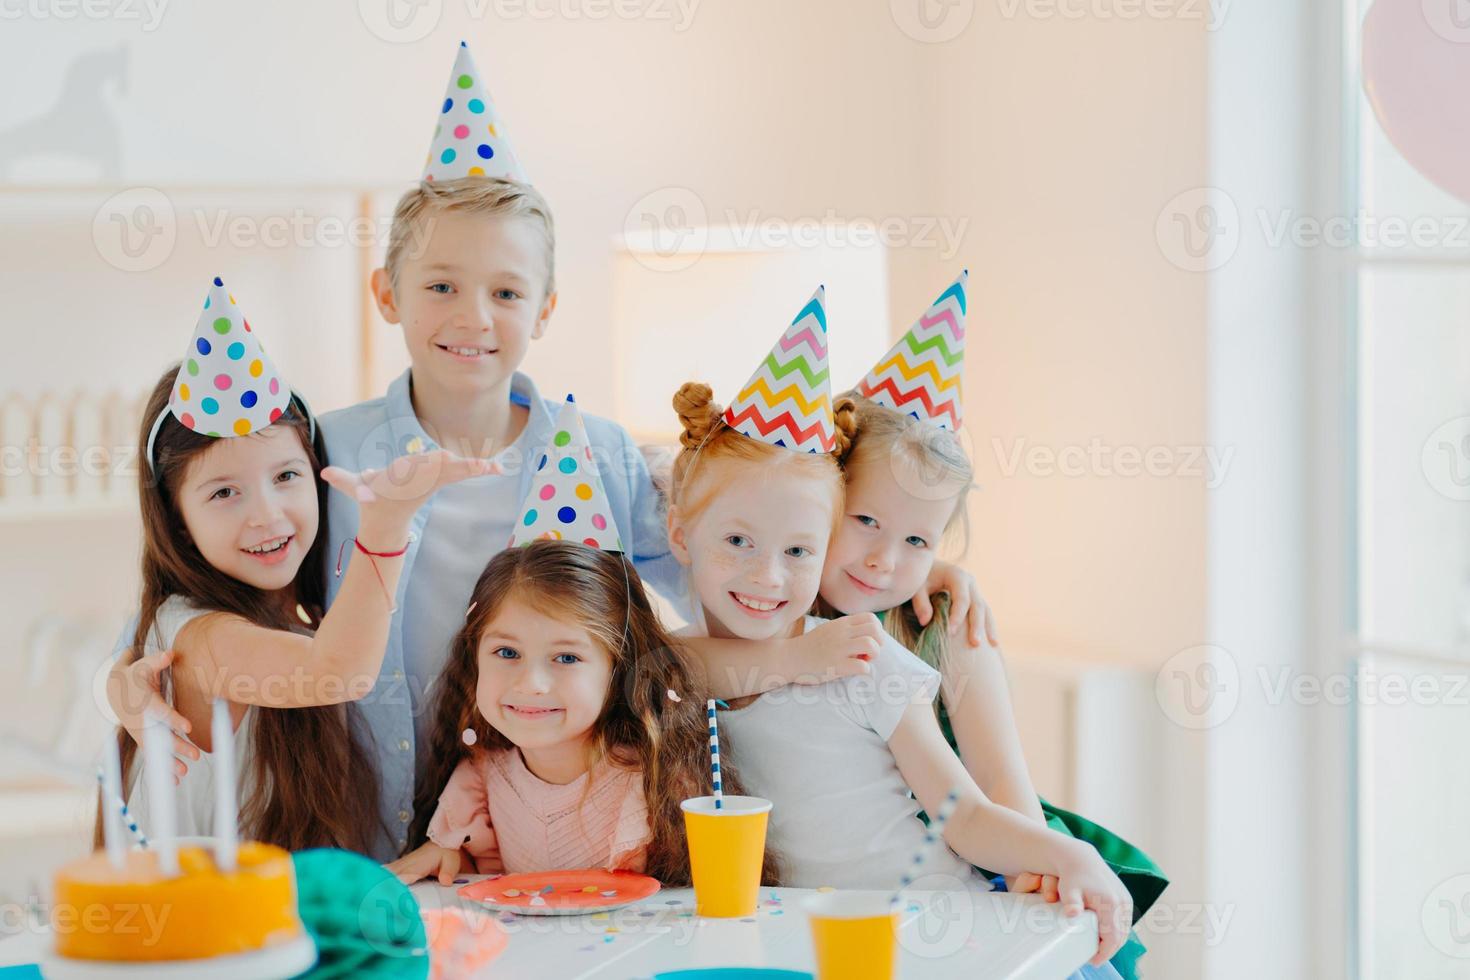 innenaufnahme von glücklichen kindern feiern party mit fallendem konfetti, tragen kegel partyhüte, posieren in der nähe eines festlichen tisches mit kuchen, umarmen und posieren zusammen. Kindergeburtstag foto